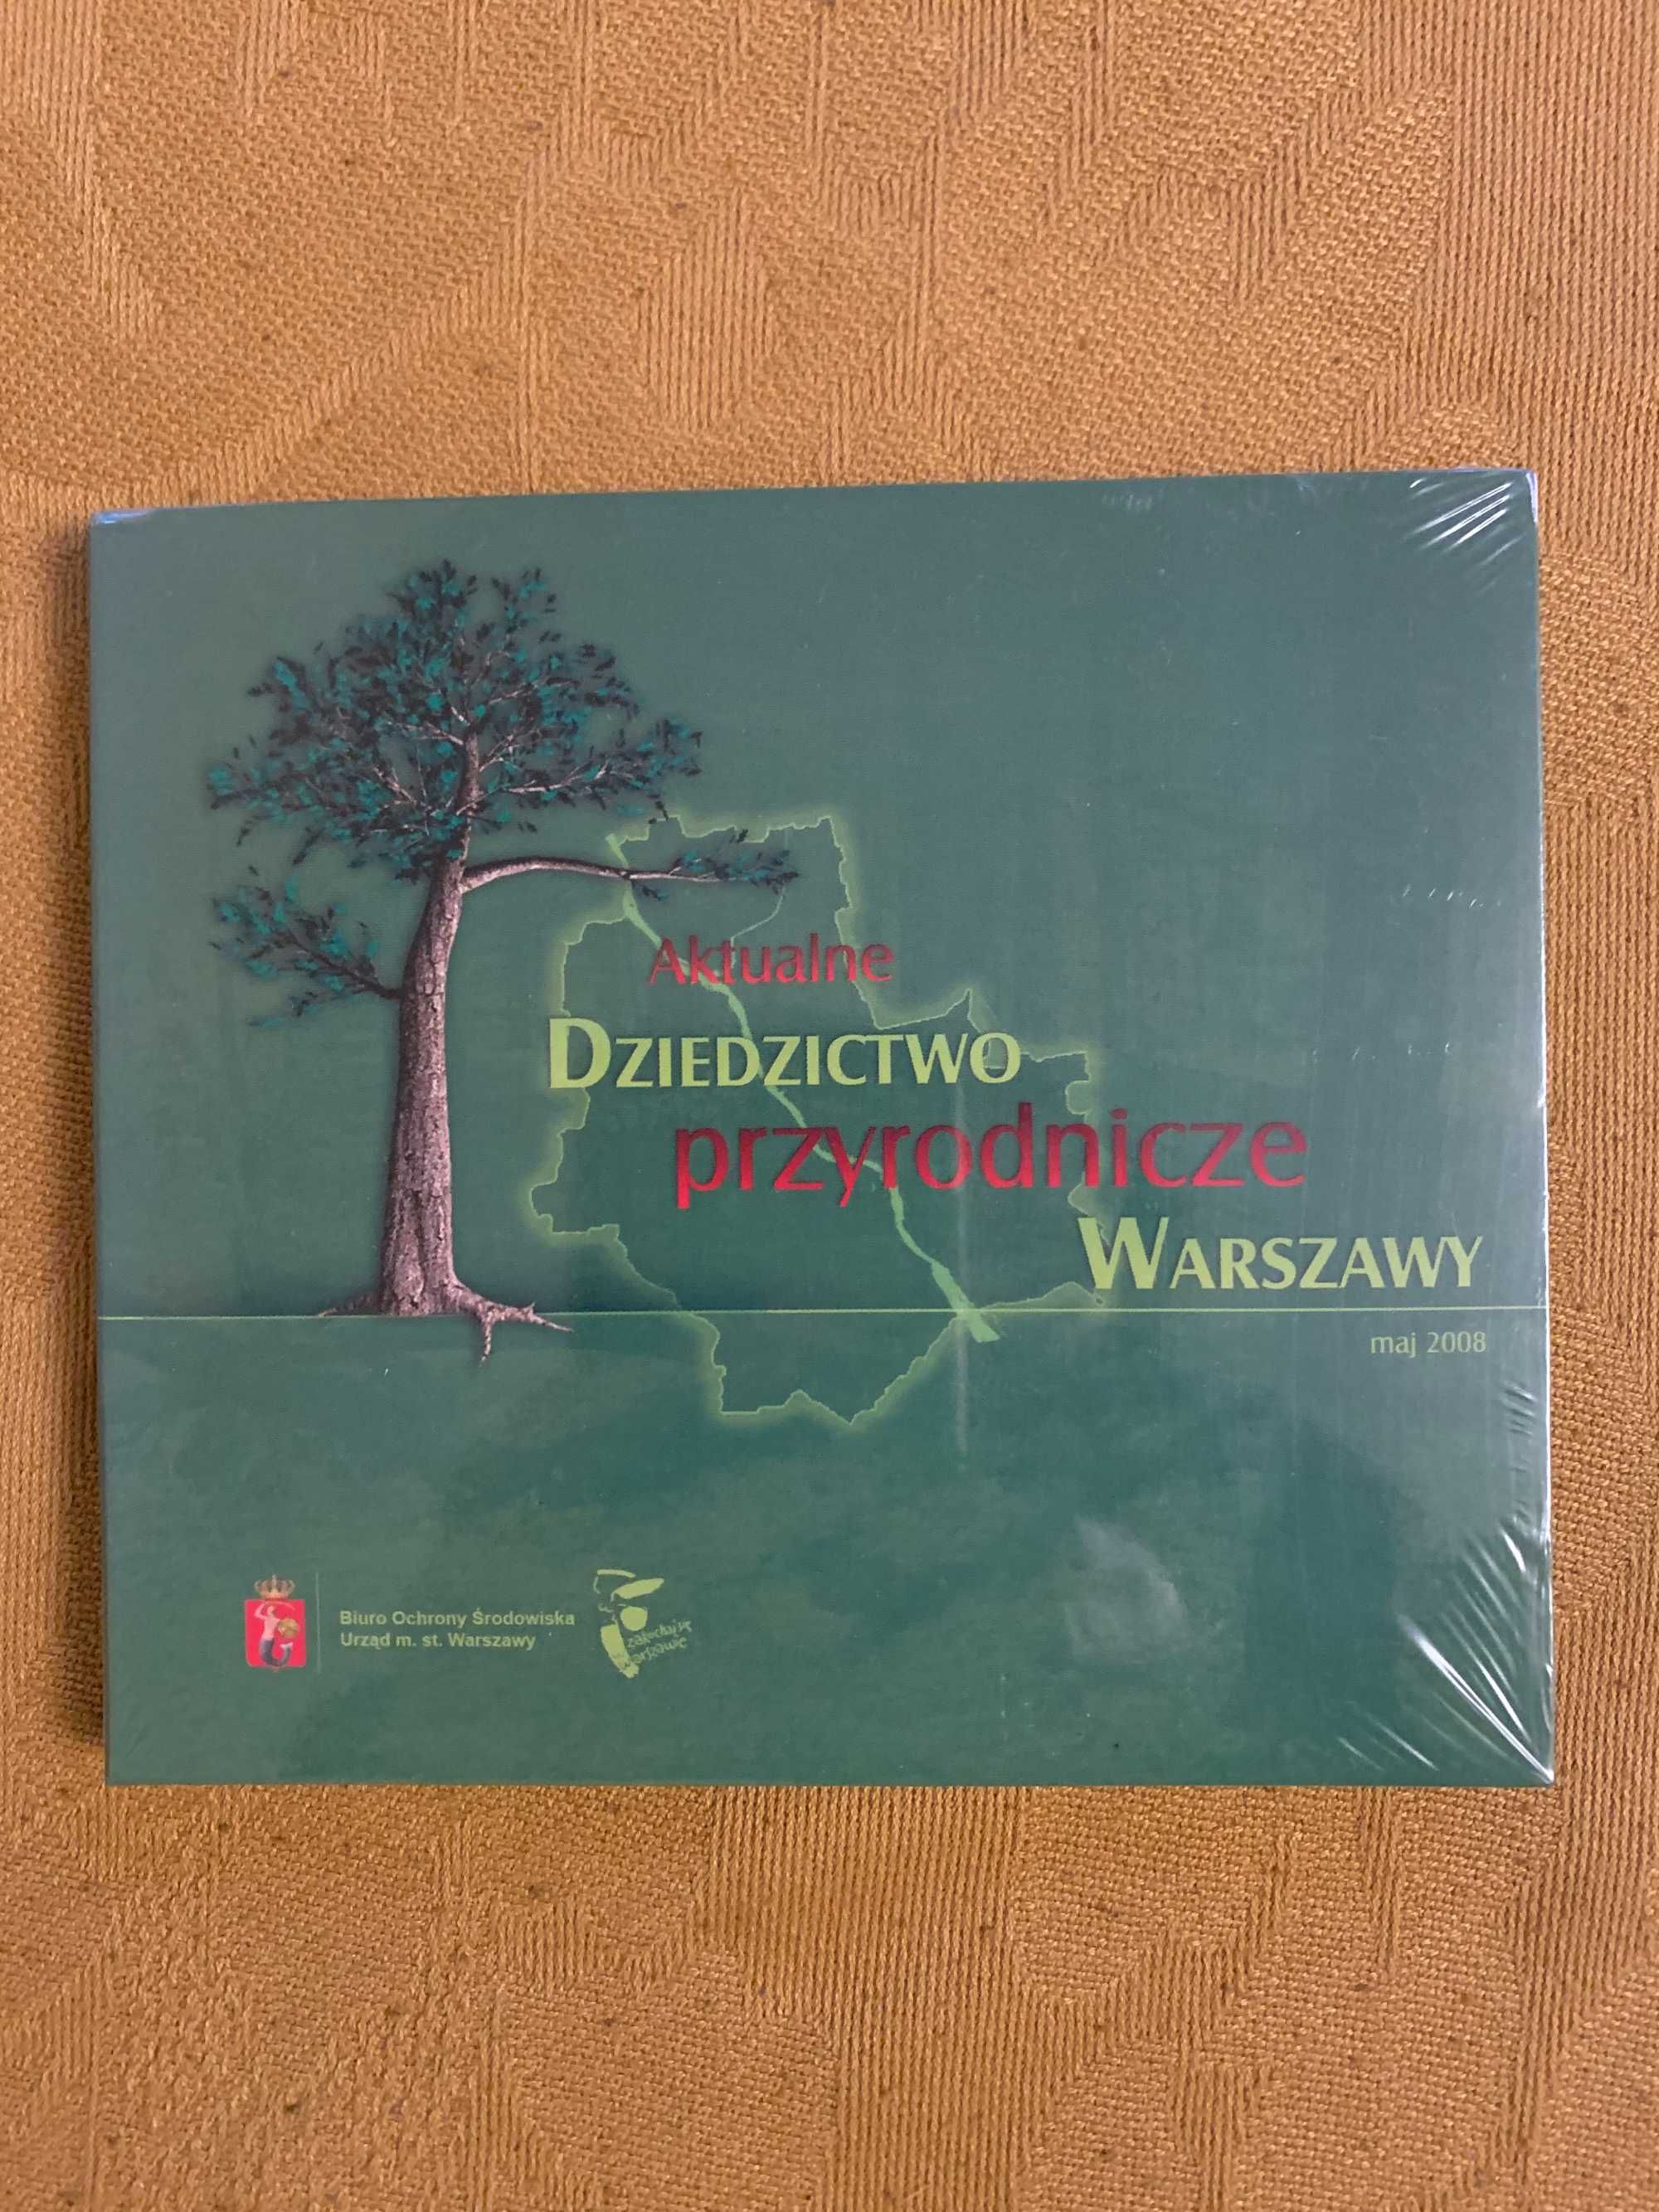 Dziedzictwo przyrodnicze Warszawy na płycie